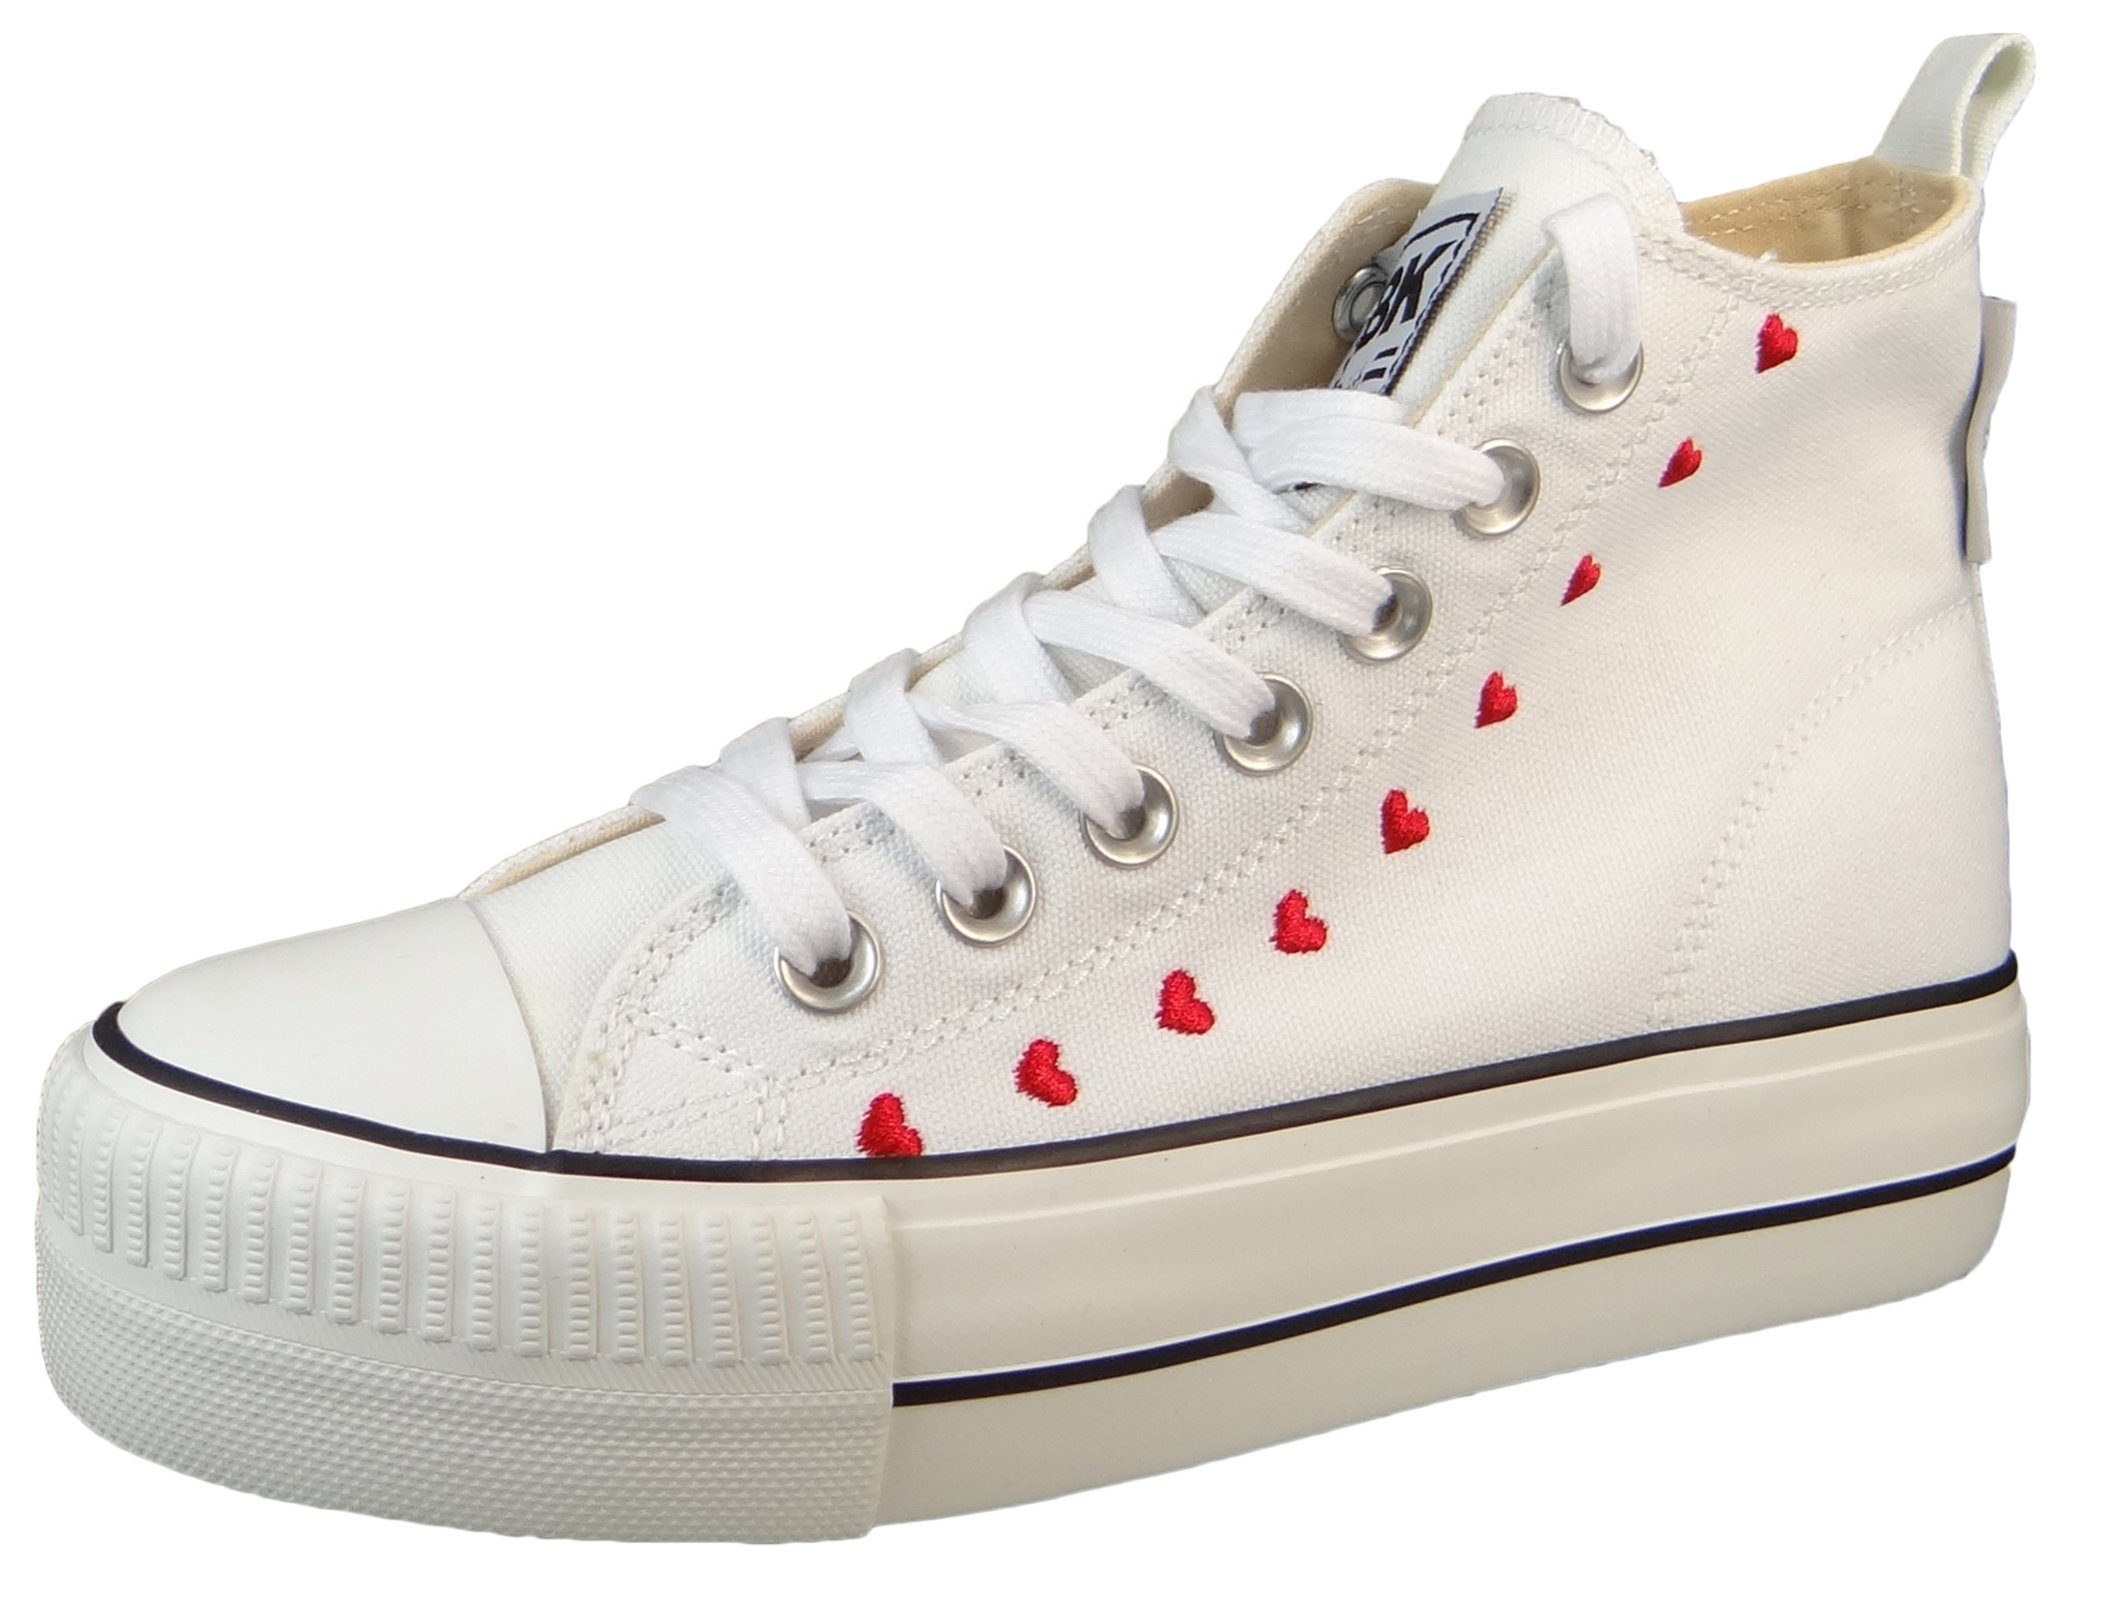 British Knights B51-3730 02 White Love Sneaker